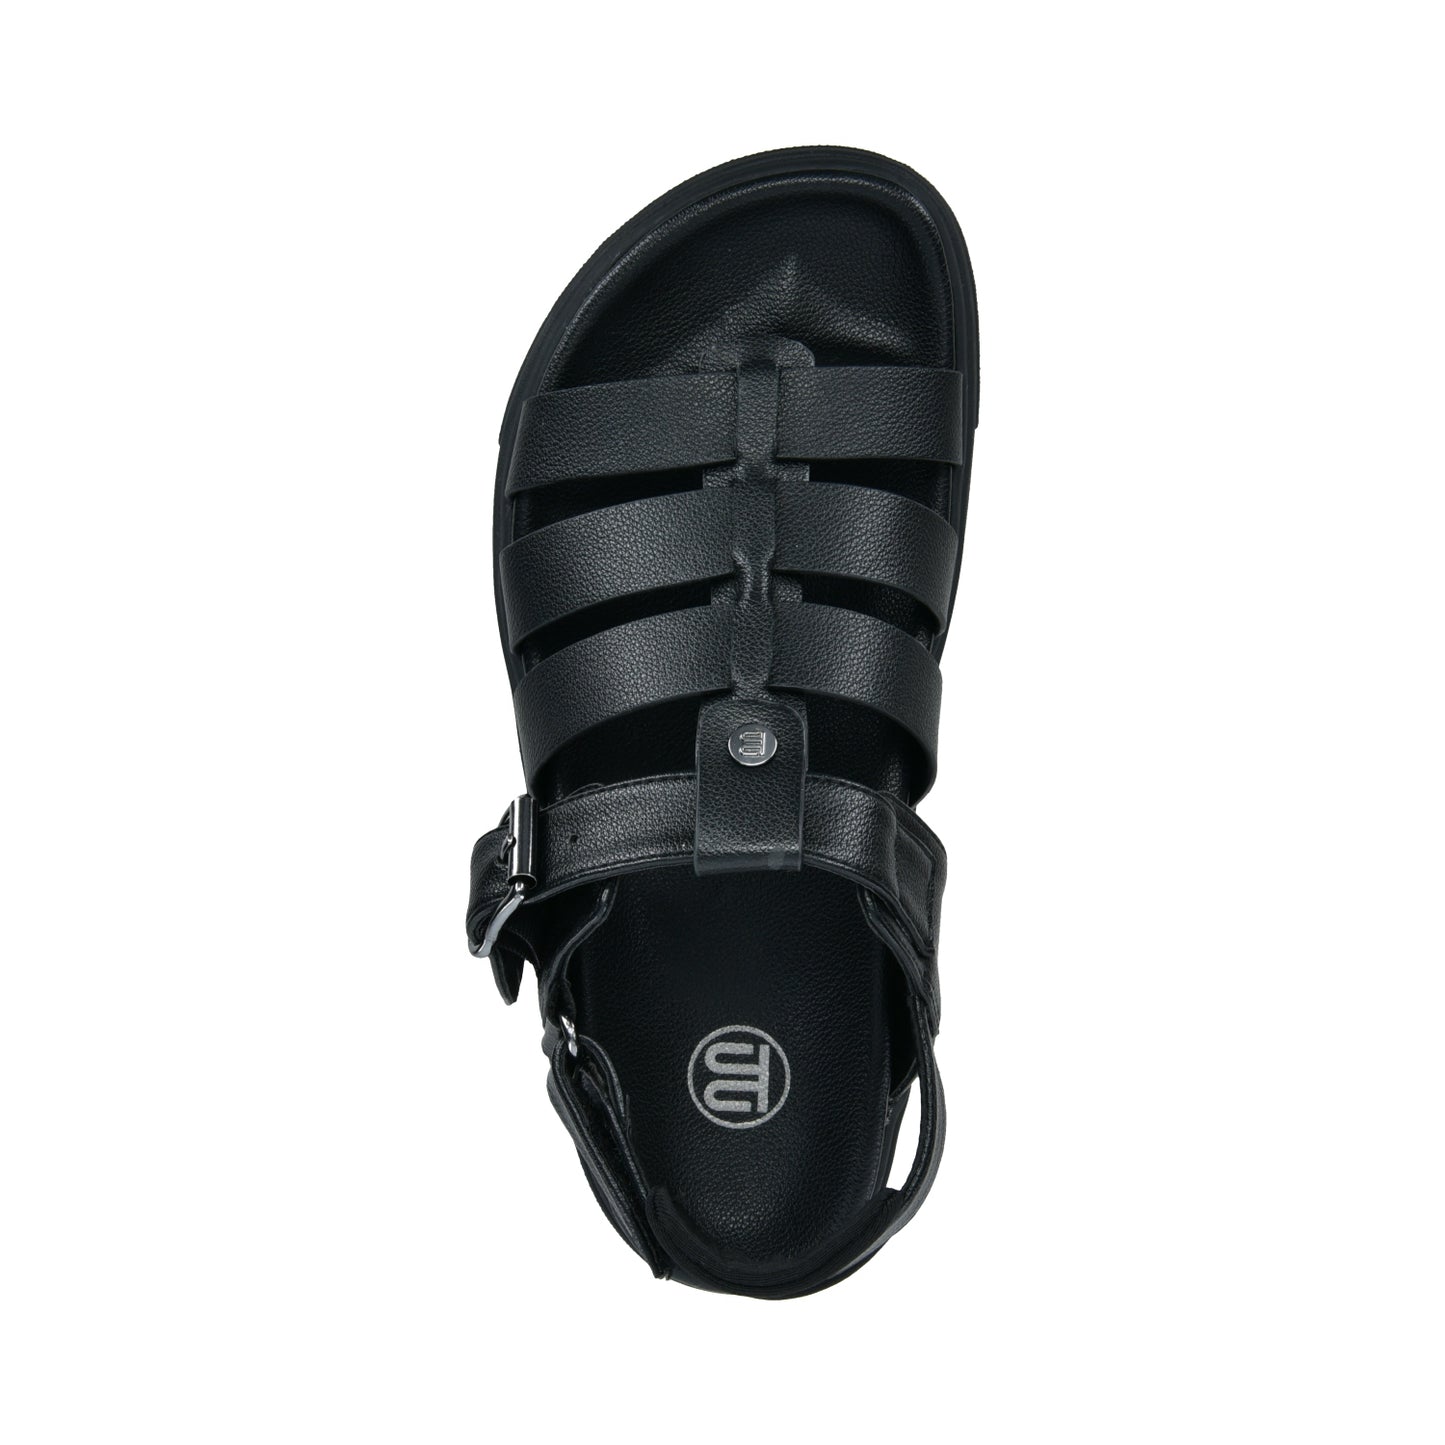 Bagatt D31-Ak780-5000-1000 Black Sandals